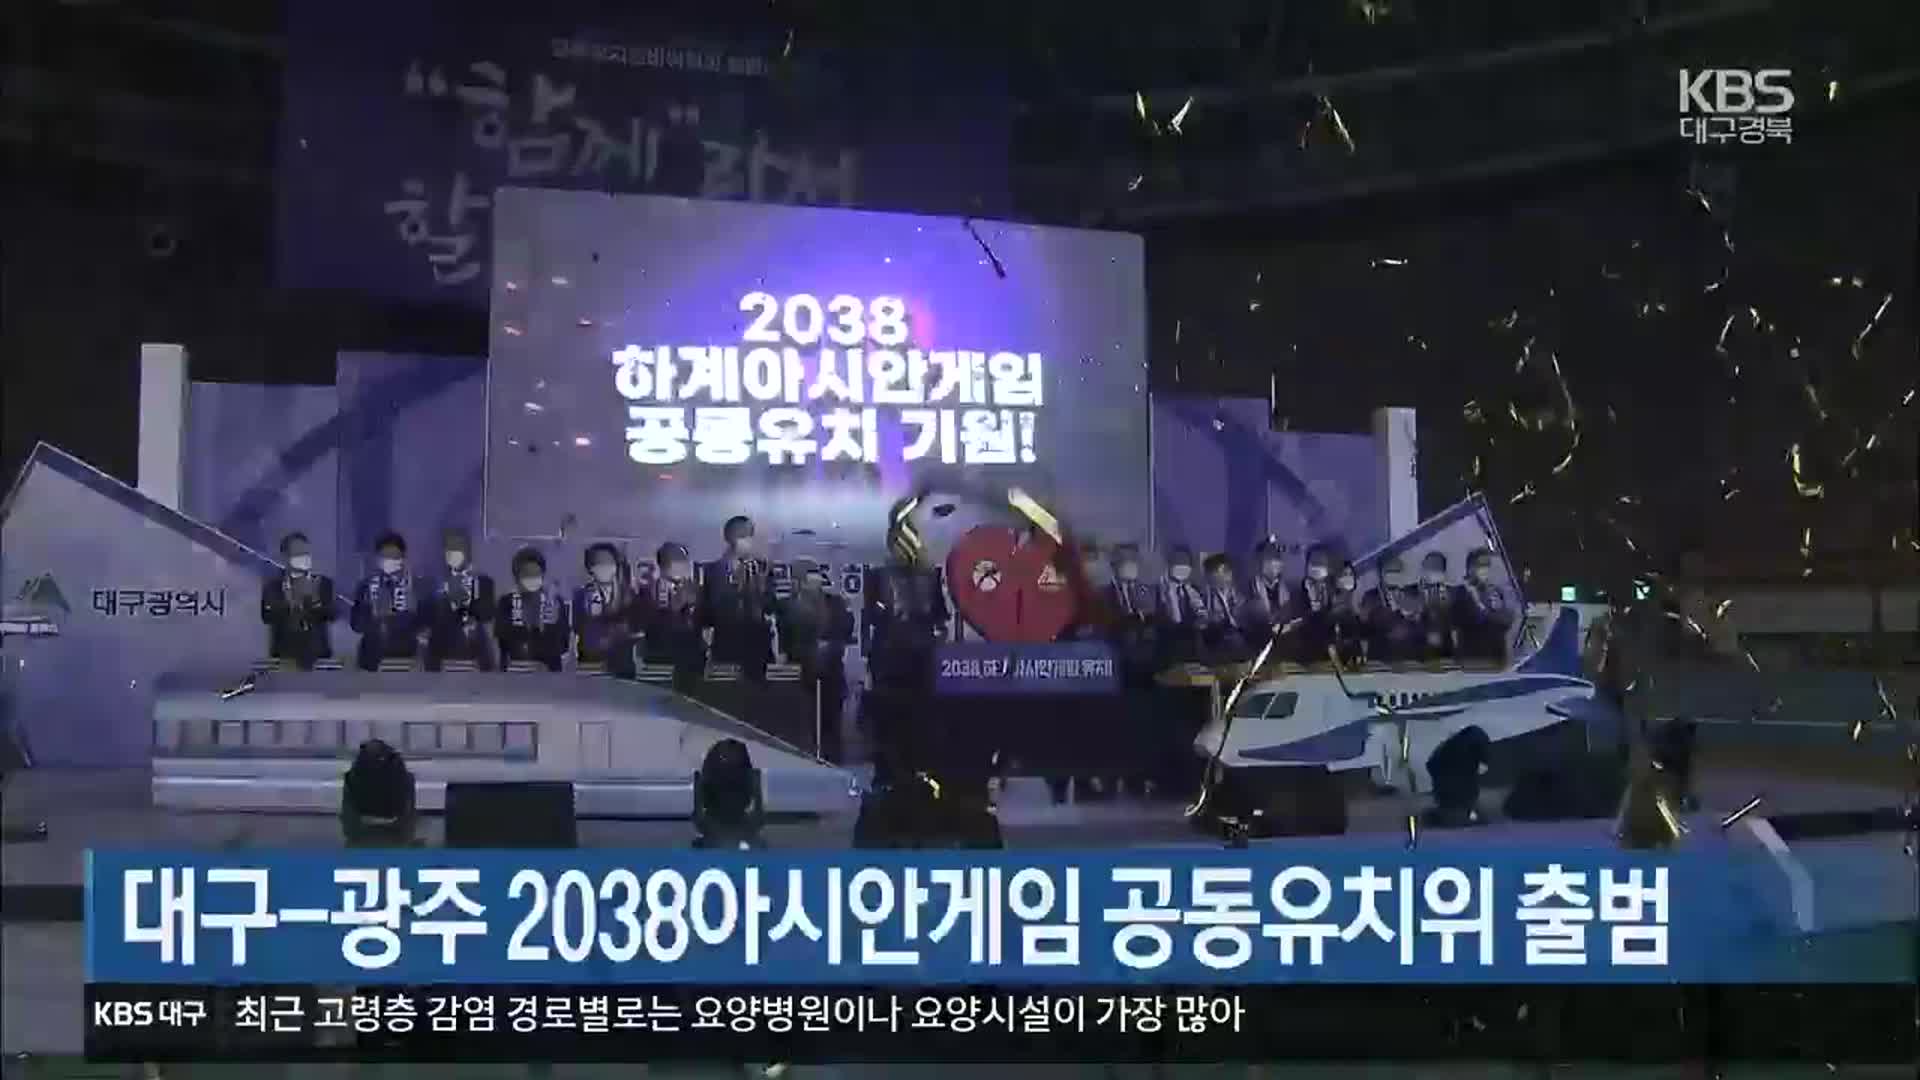 대구-광주 2038아시안게임 공동유치위 출범